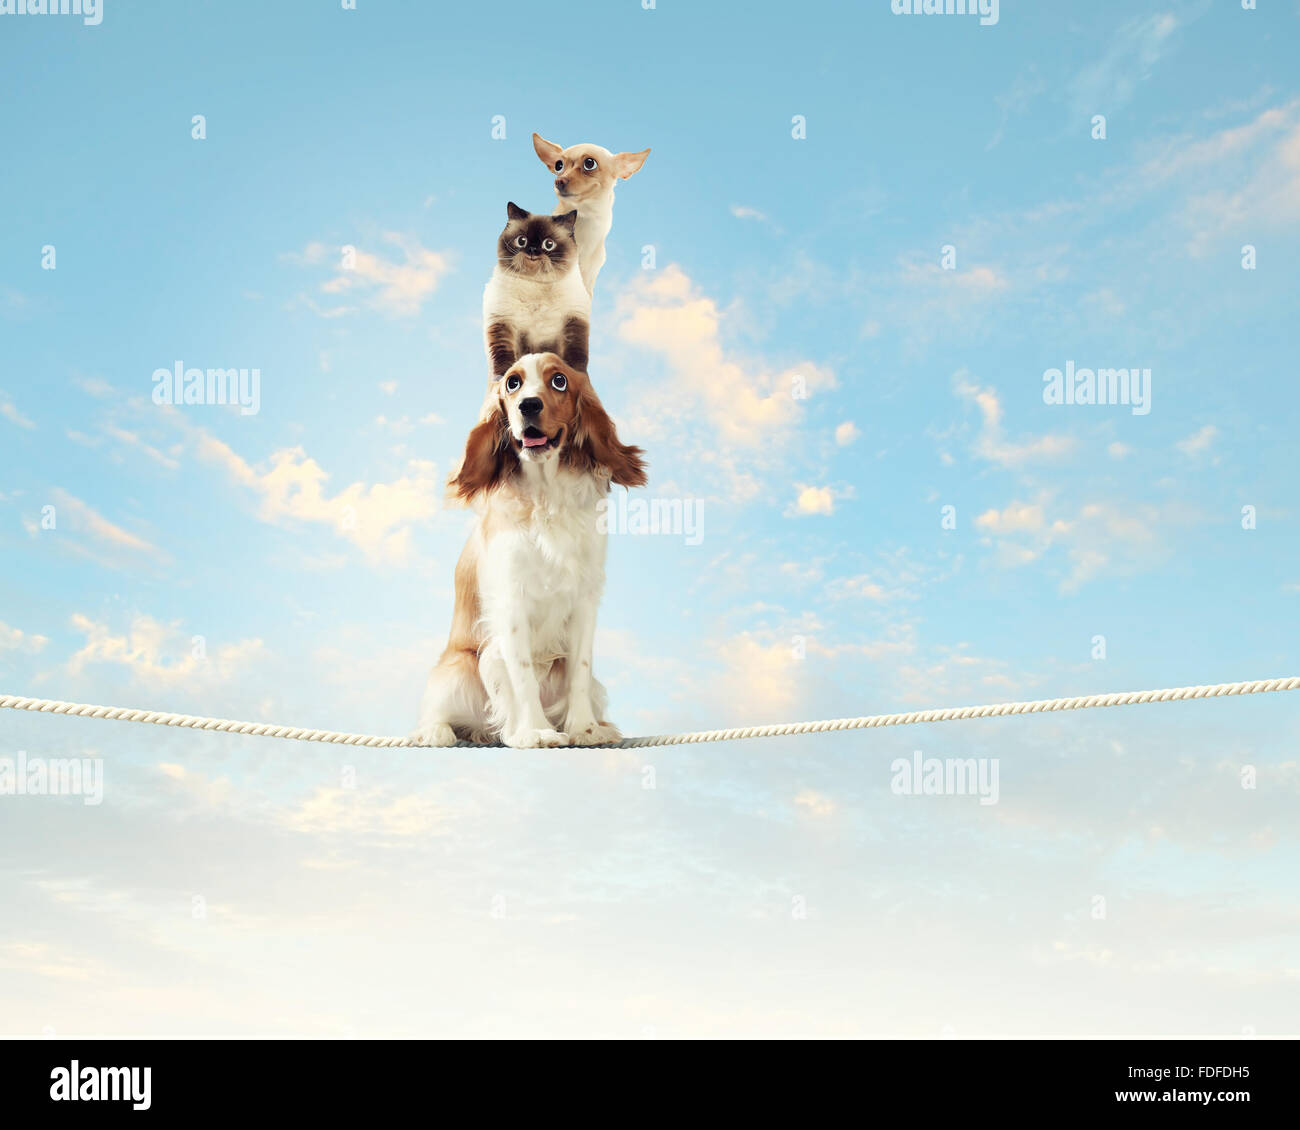 Bild der Spaniel Hund balancieren auf Seil Stockfoto